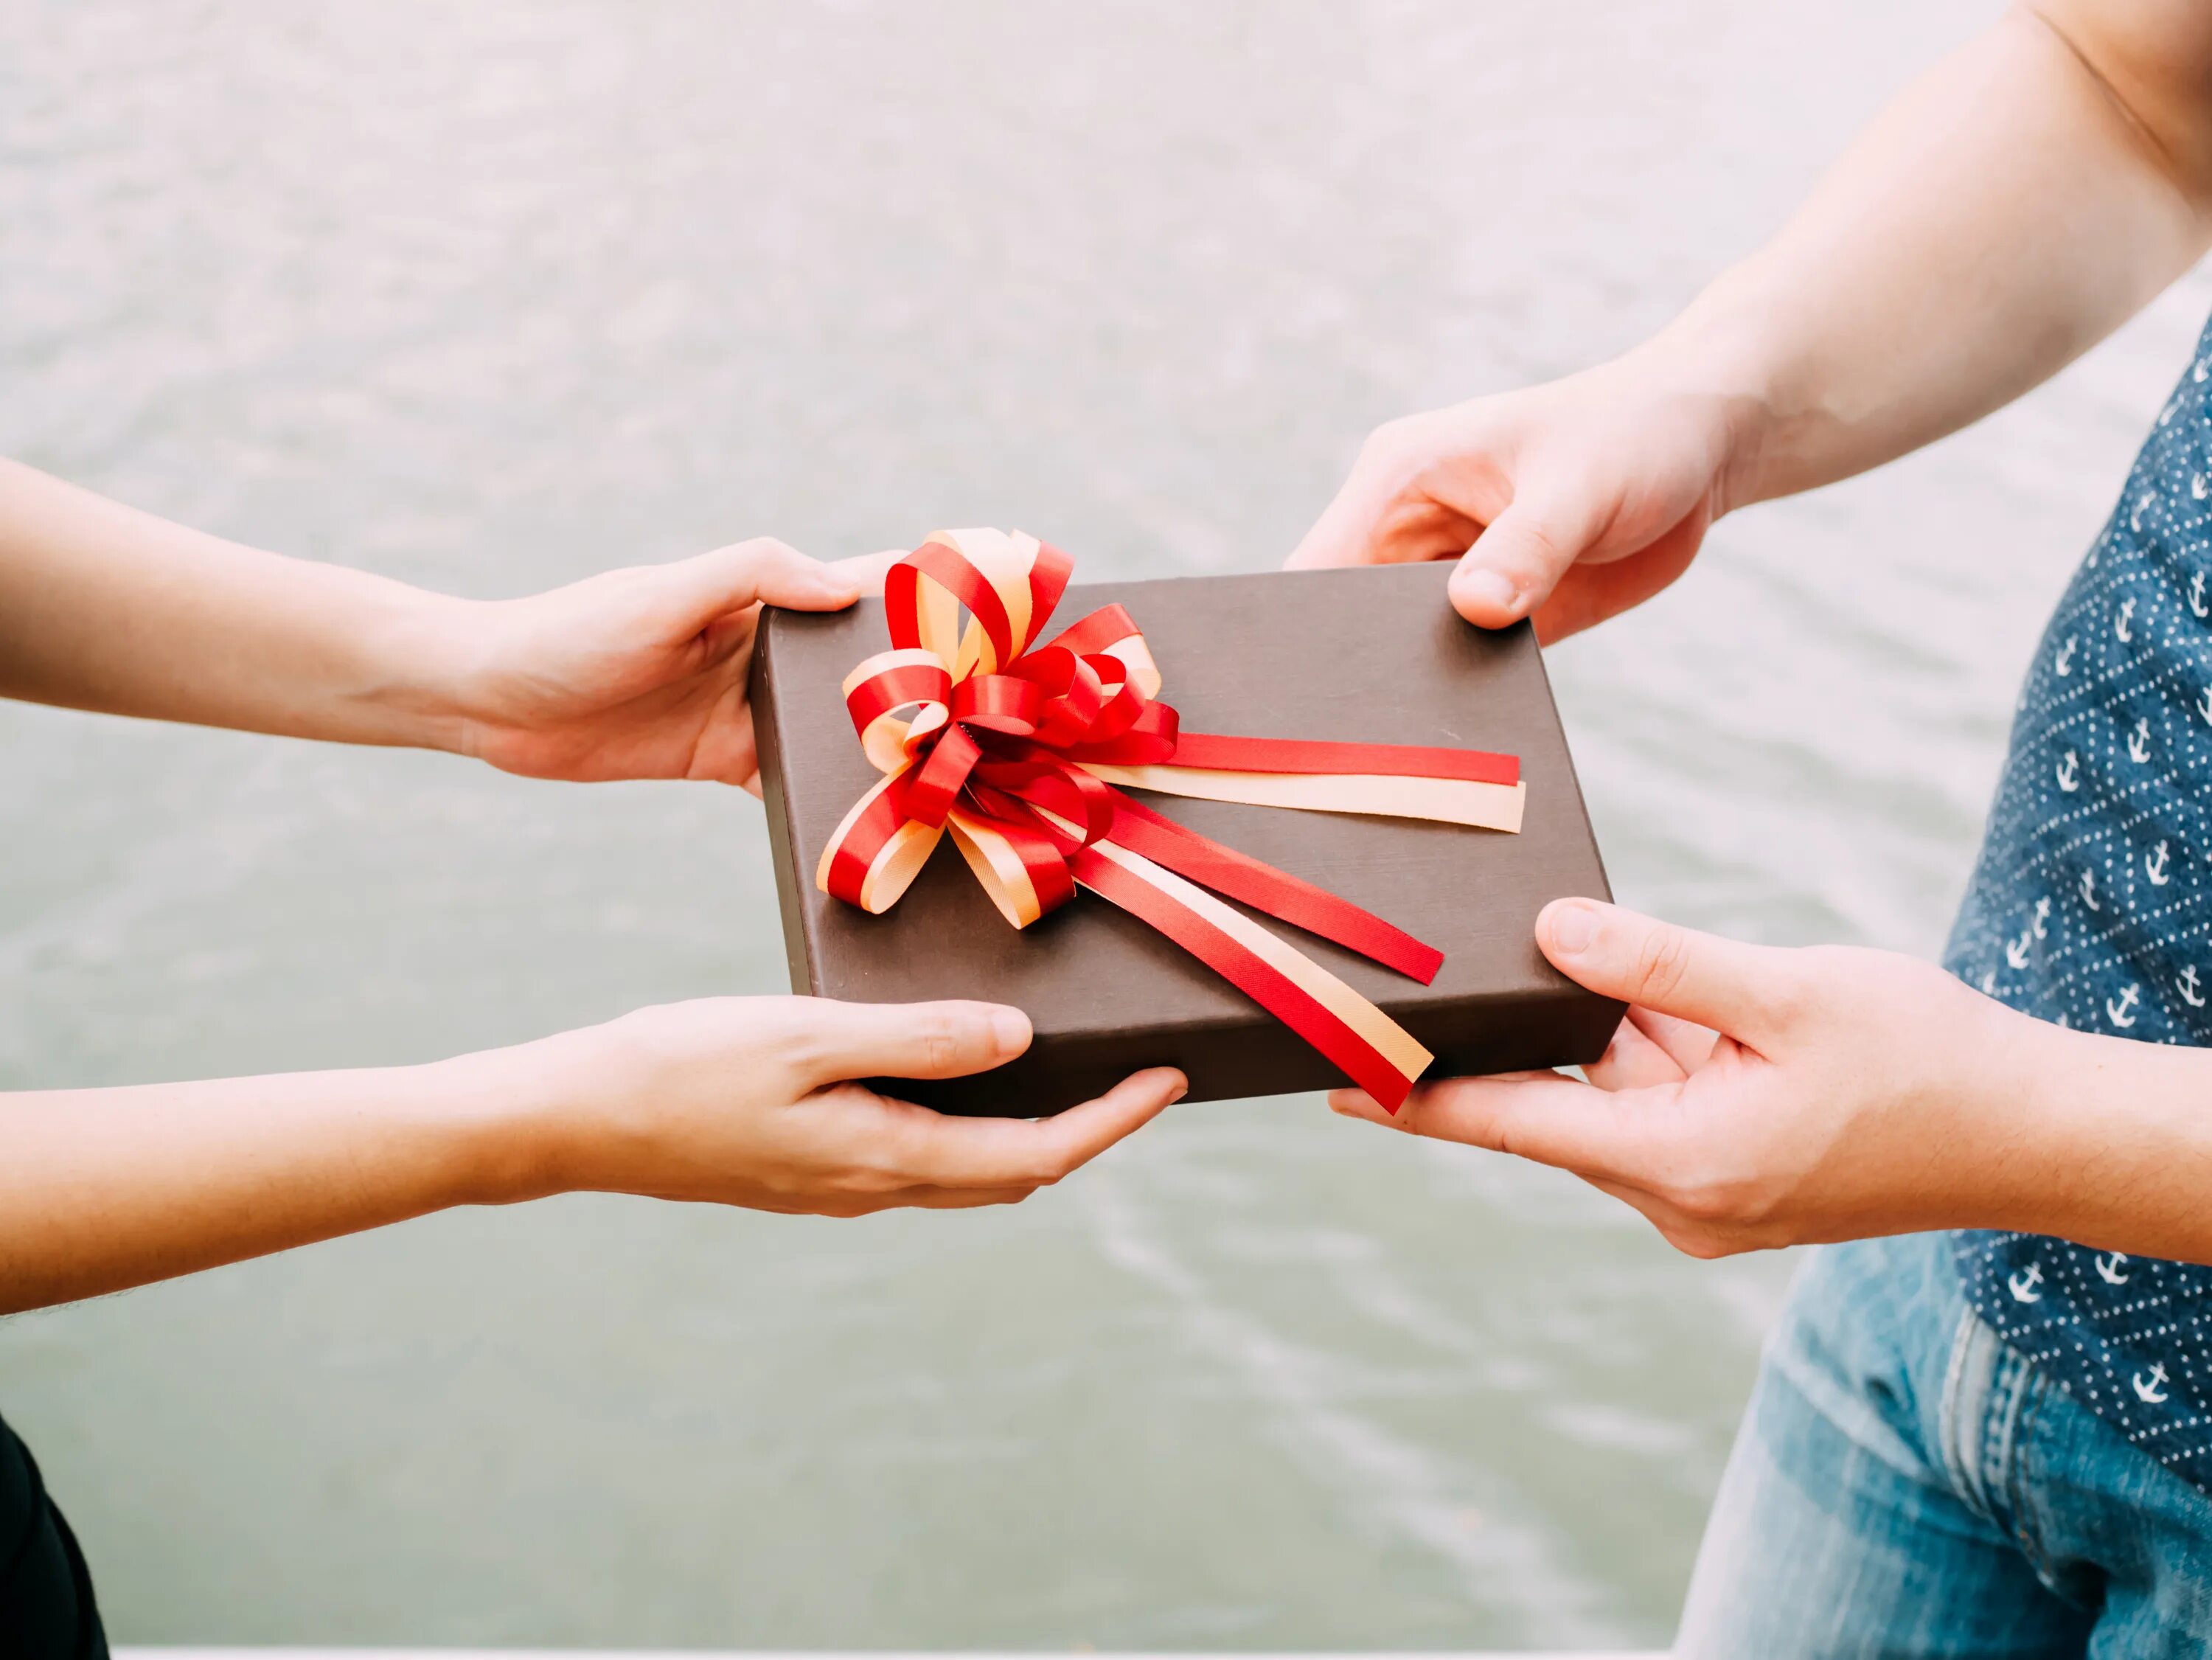 Receive a lot. Подарок. Человек дарит подарок. Маленький подарок в руке. Дарим подарки.